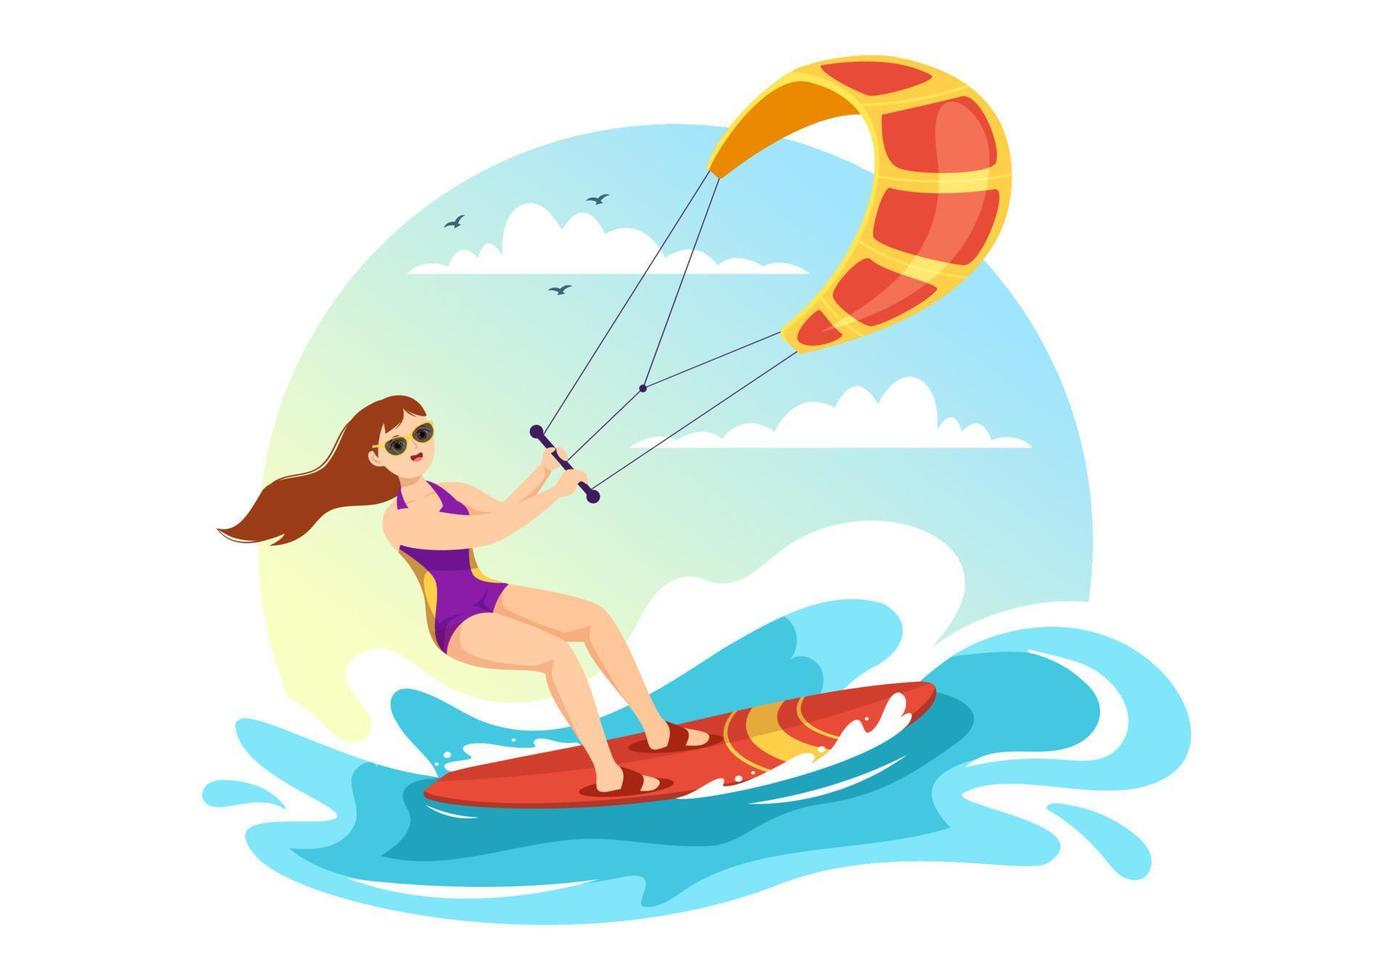 ilustración de kitesurf con kite surfista de pie en kiteboard en el mar de verano en deportes acuáticos extremos plantilla dibujada a mano de dibujos animados planos vector